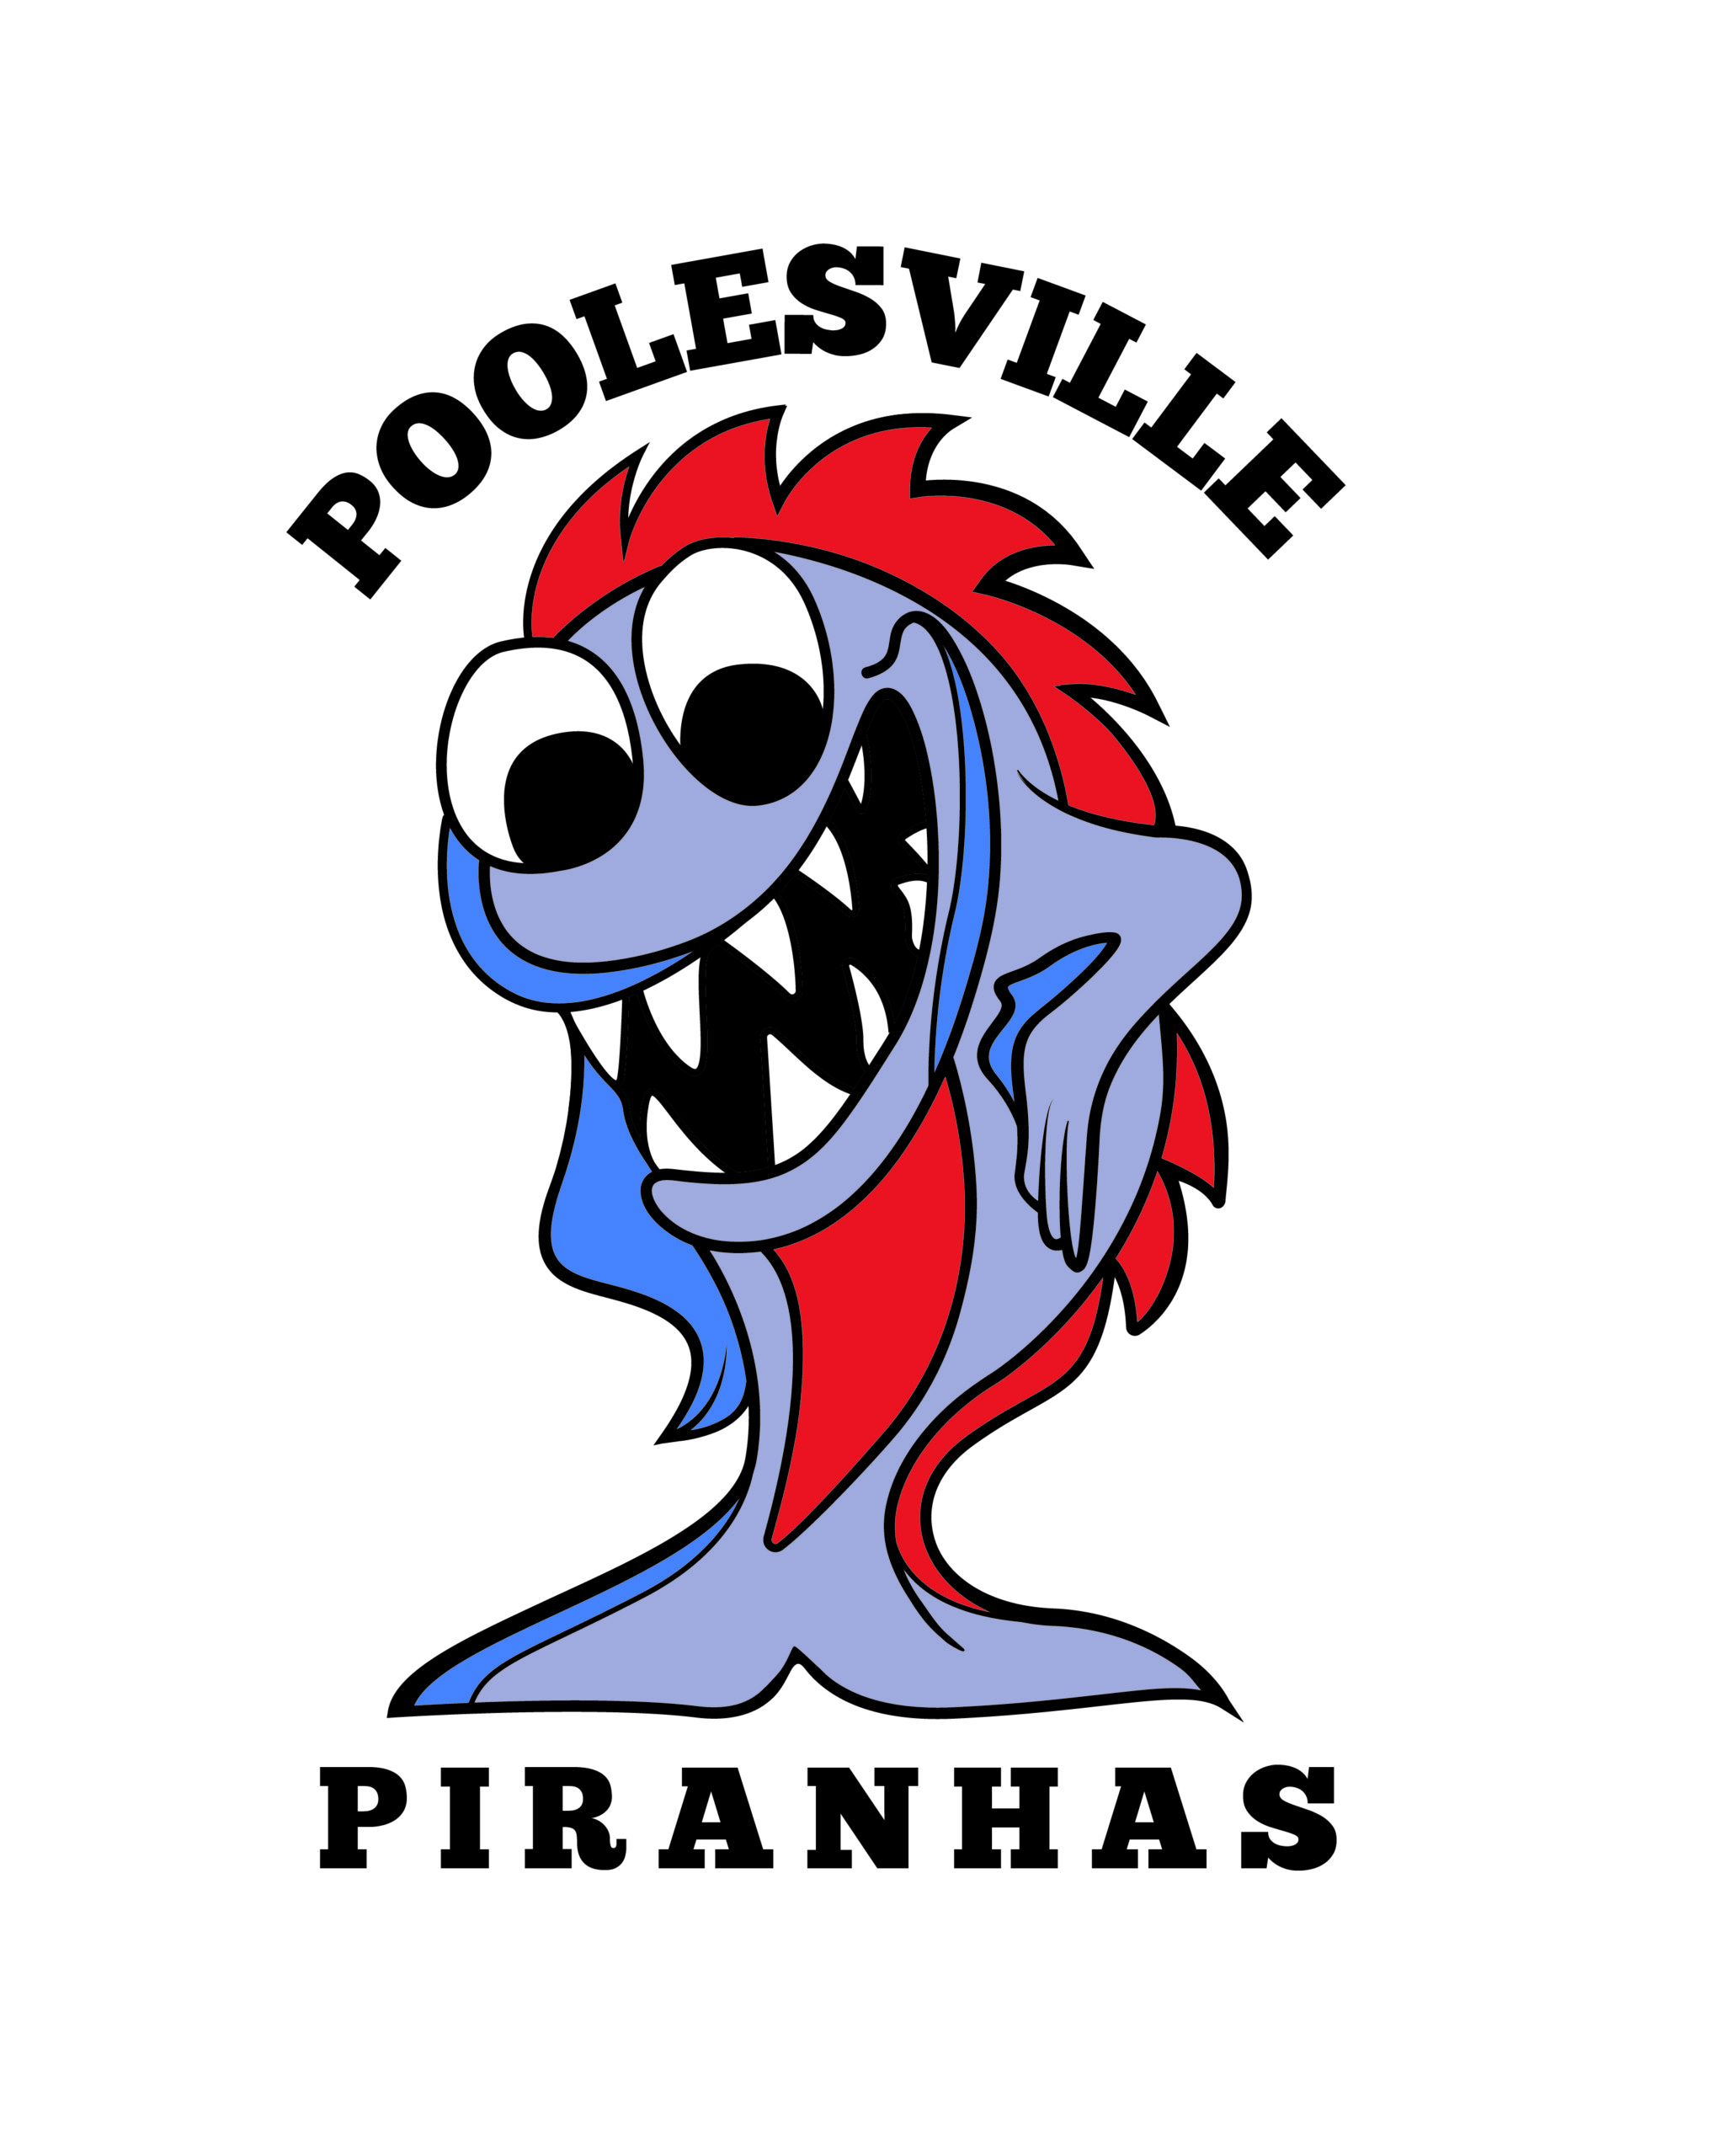 Poolesville Piranhas